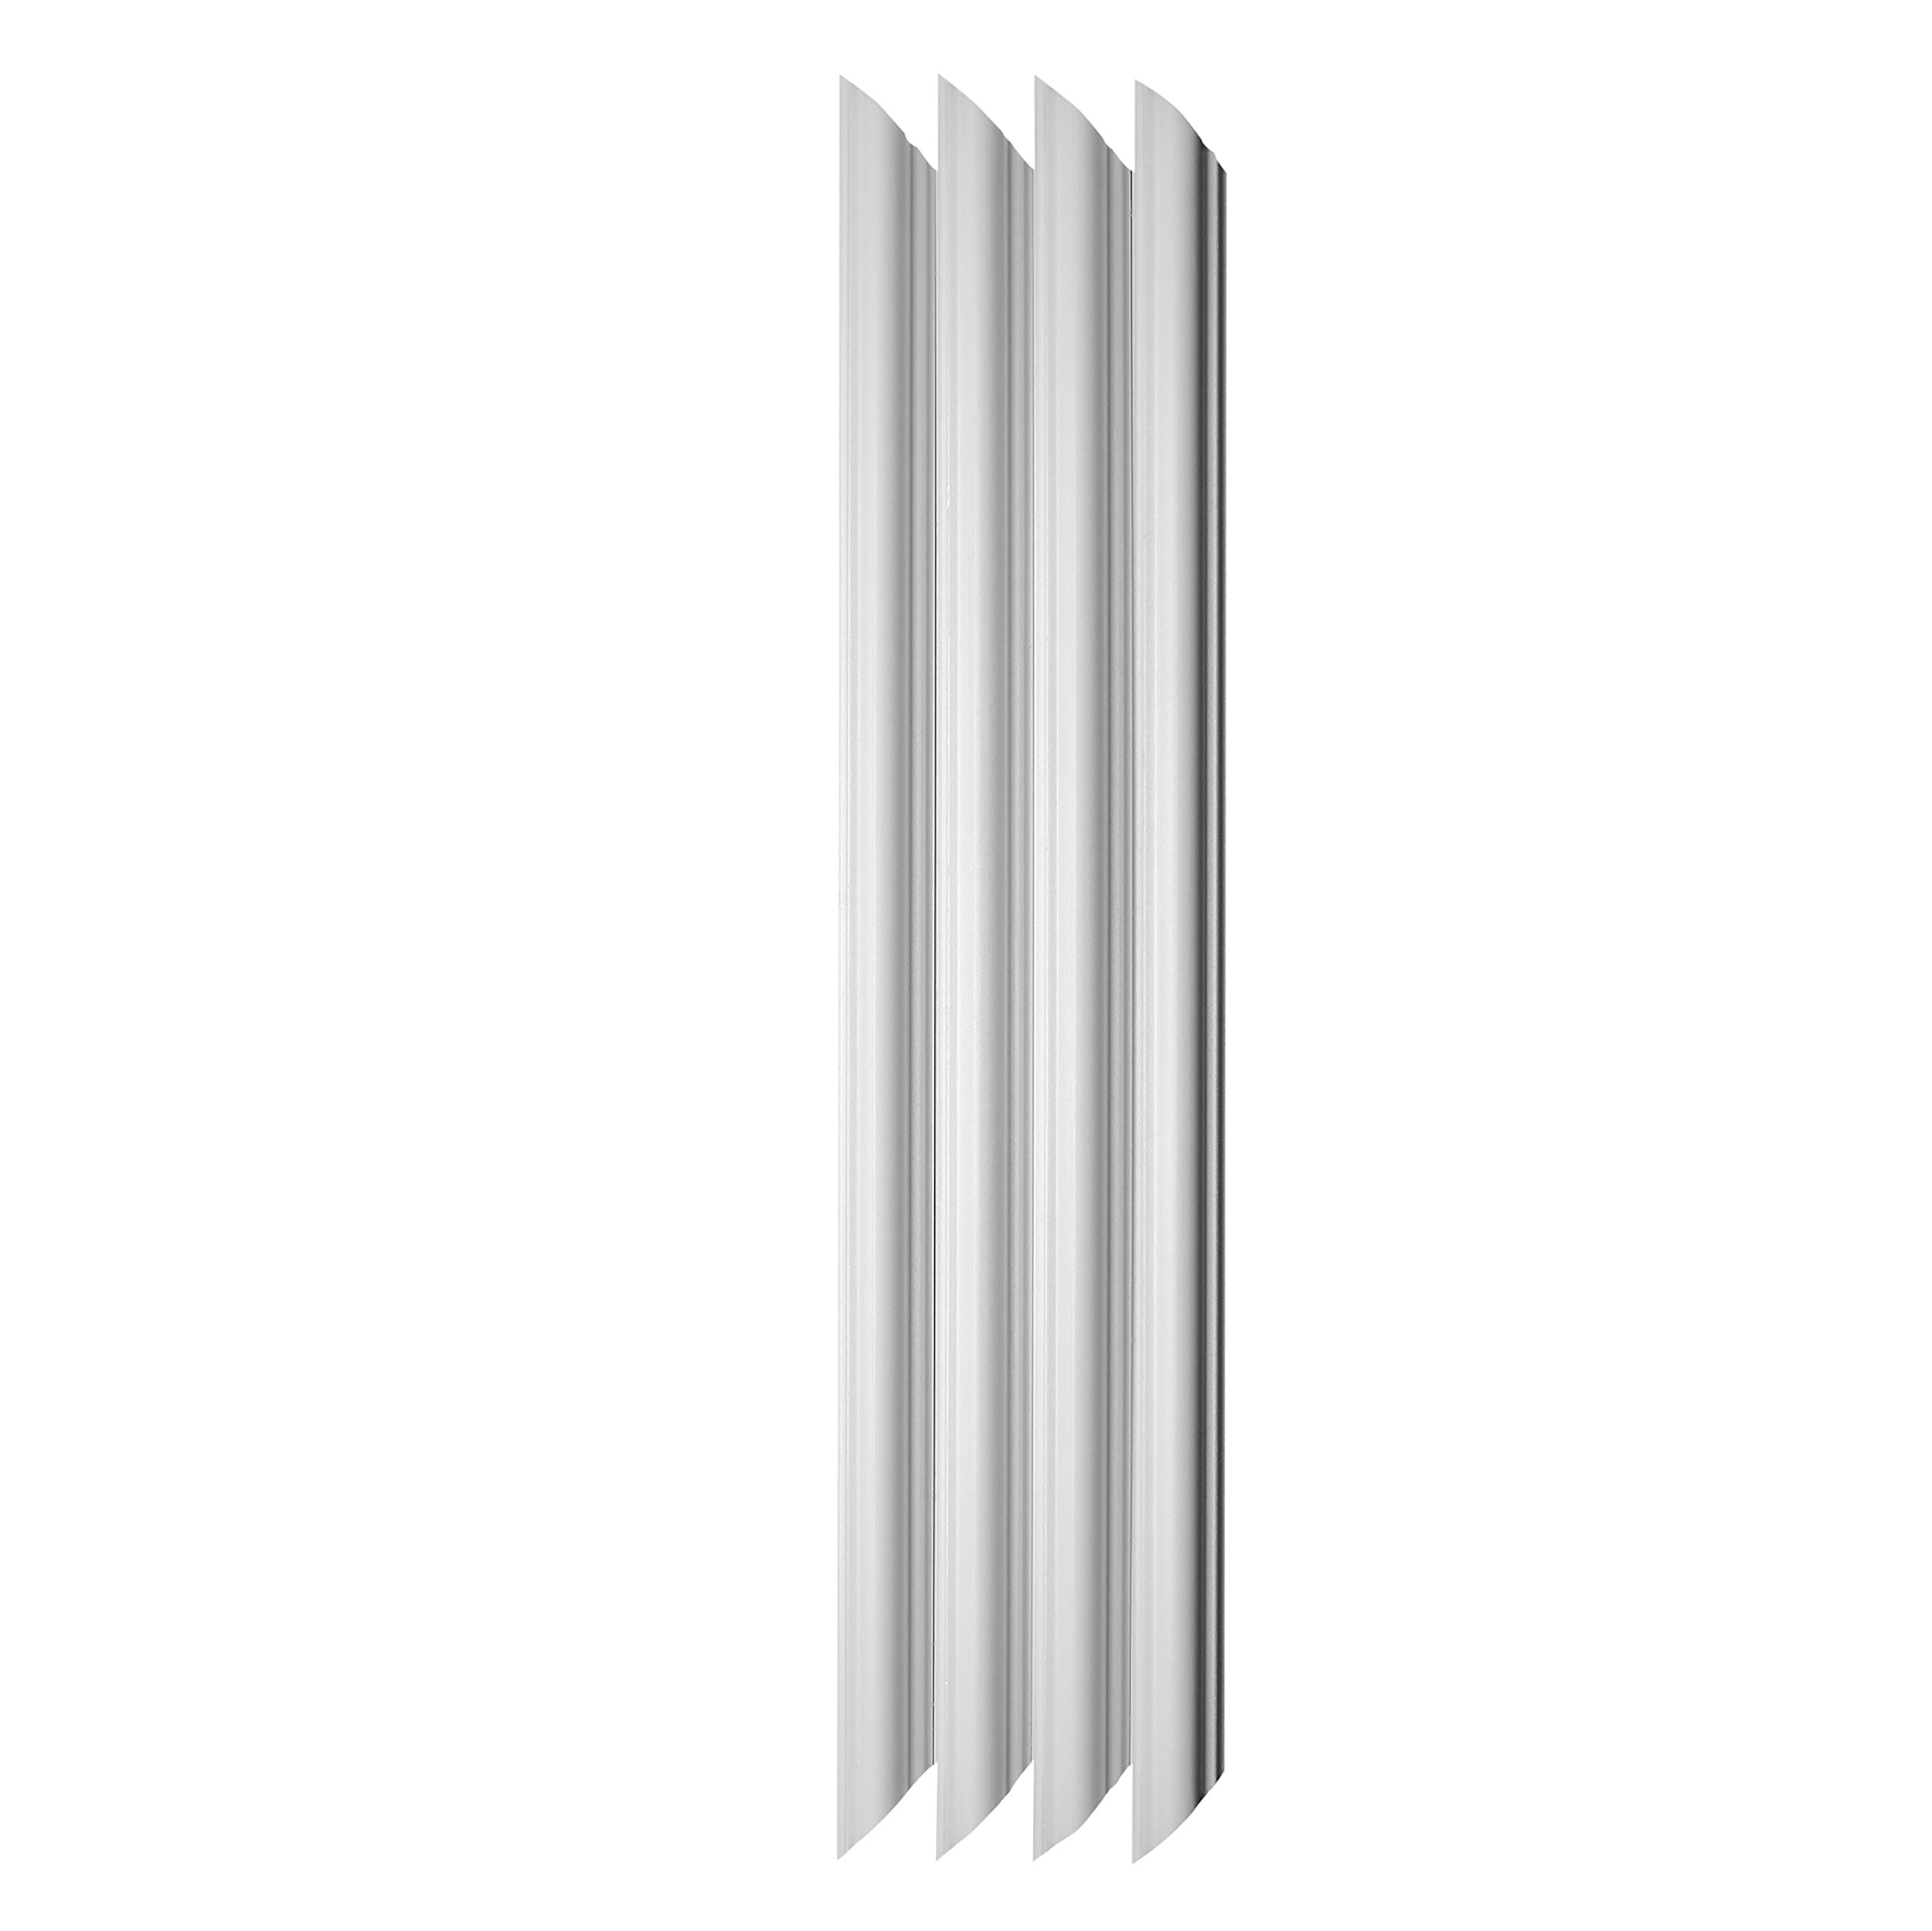 Decosa Wandkassetten-Set Melissa, weiß, 25 mm, 45 cm x 45 cm, 2 Stück